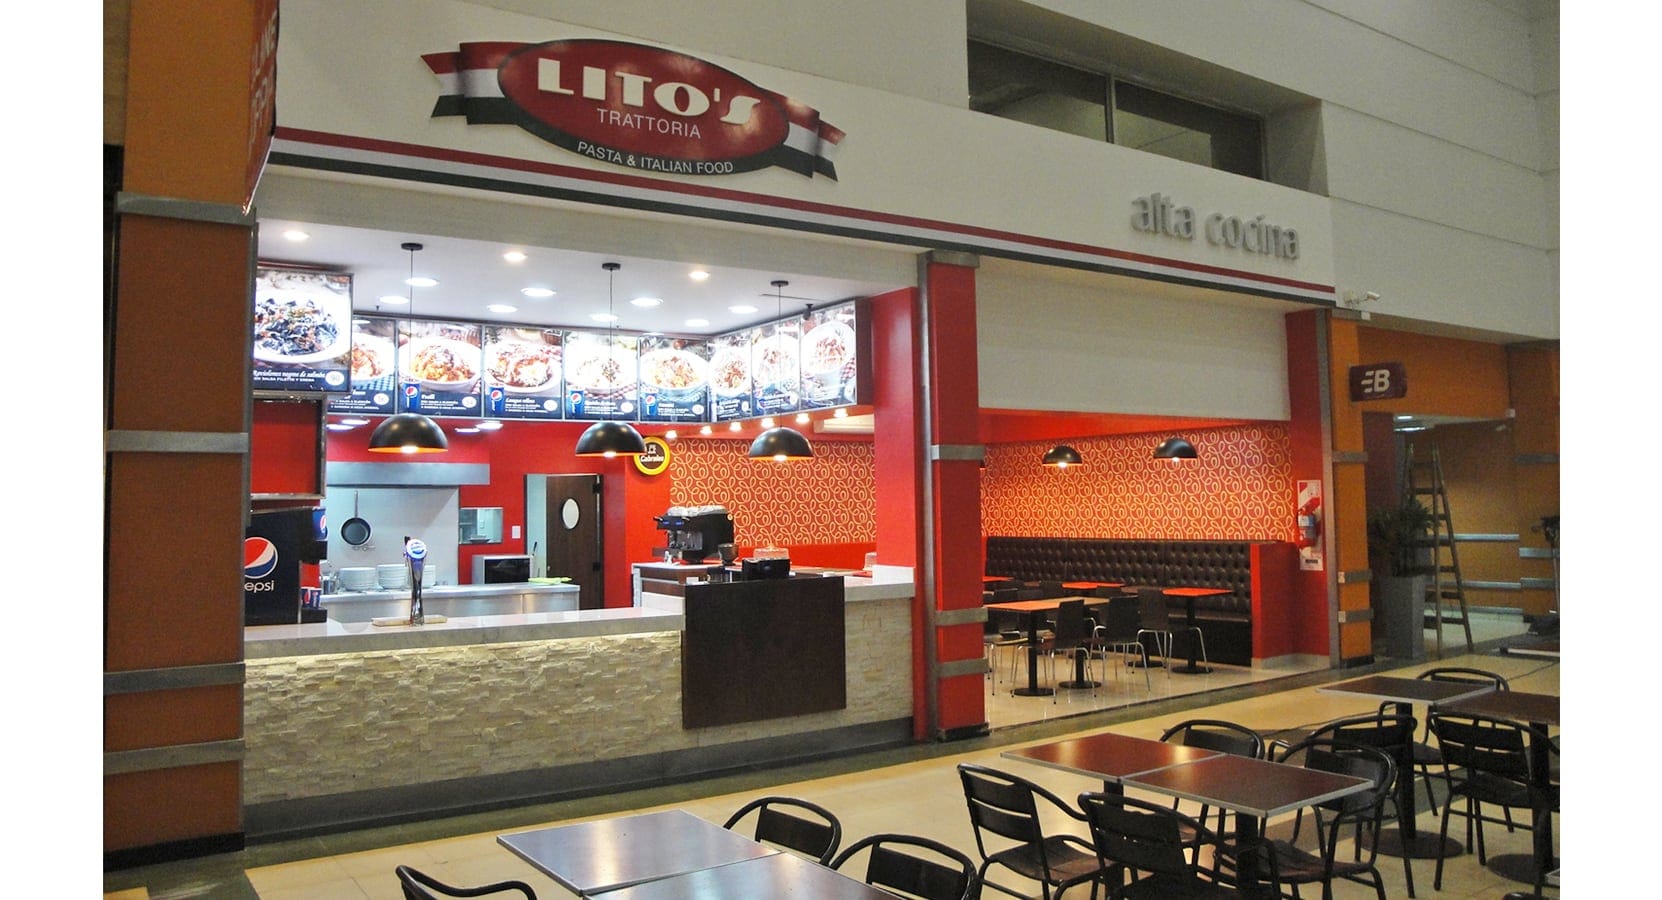 2013. LITO'S Pizza & Pasta 2